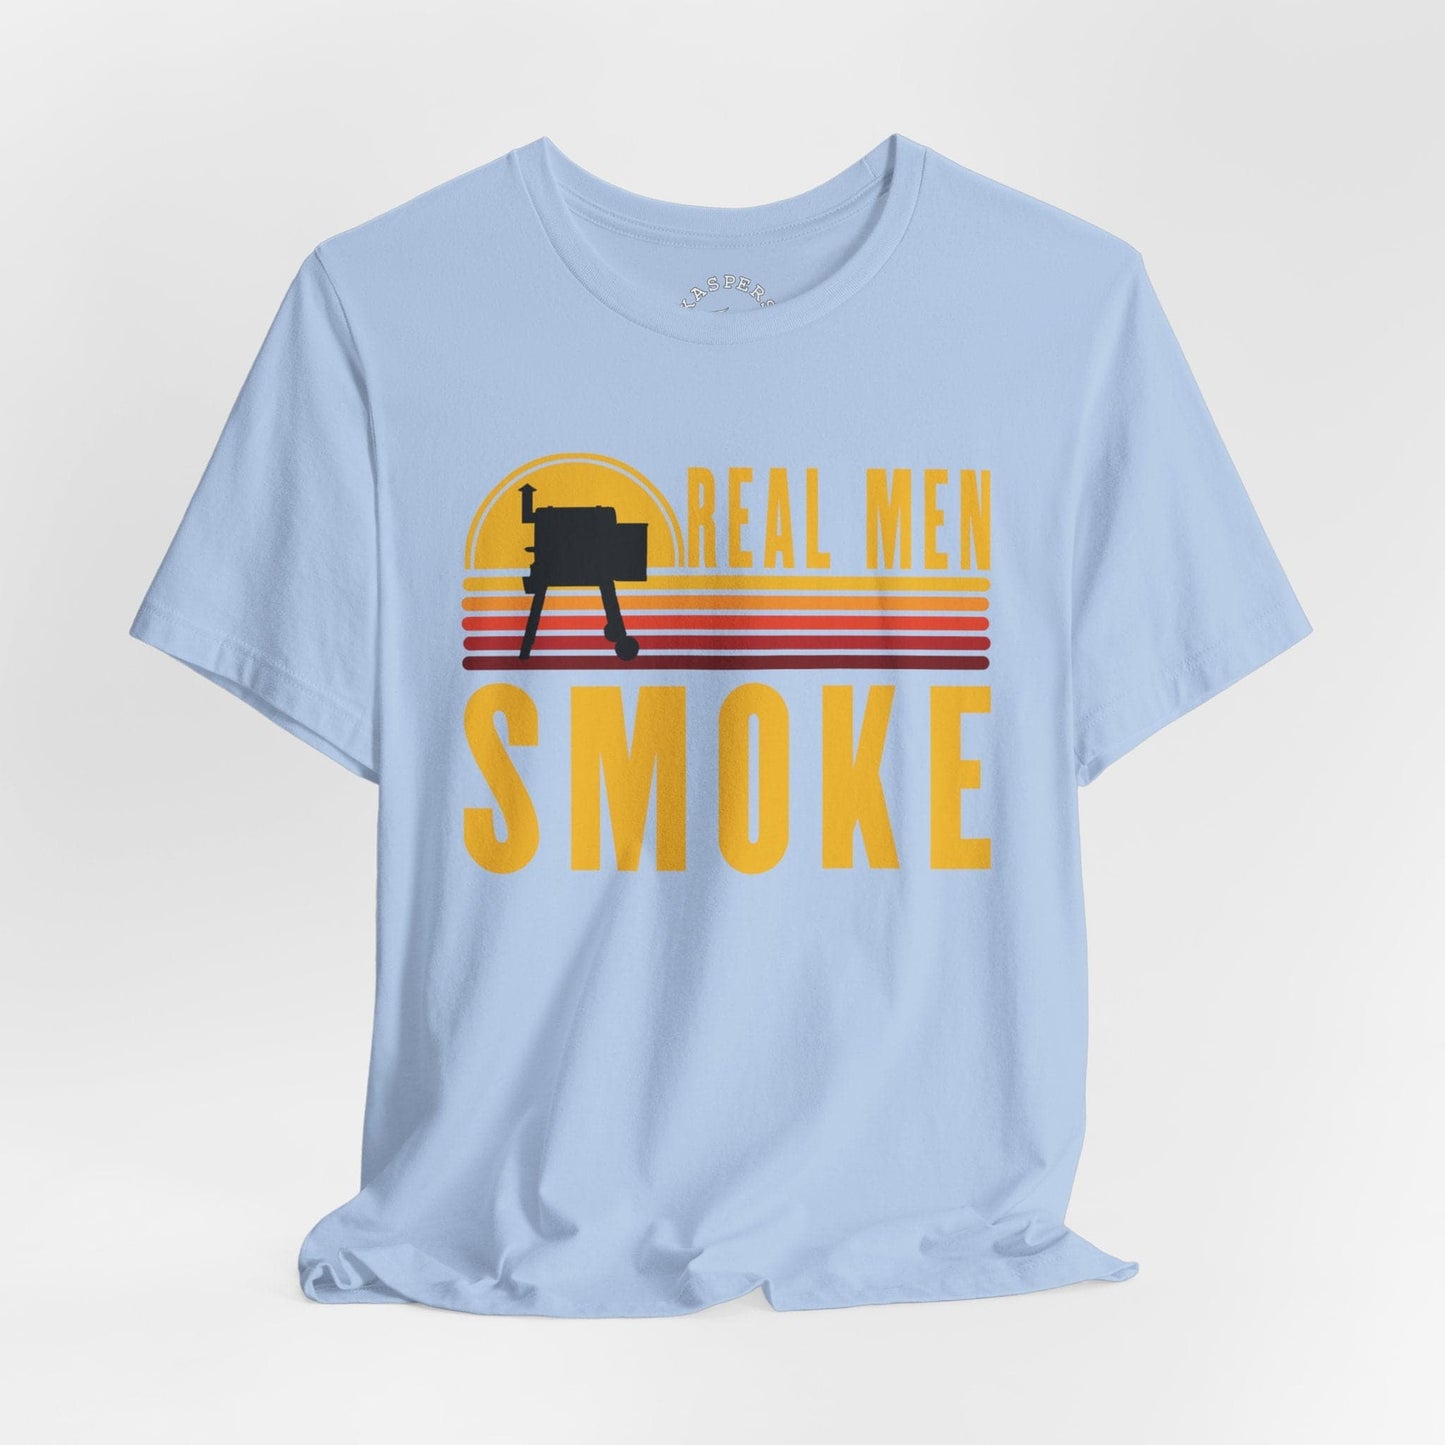 Real Men Smoke T-Shirt